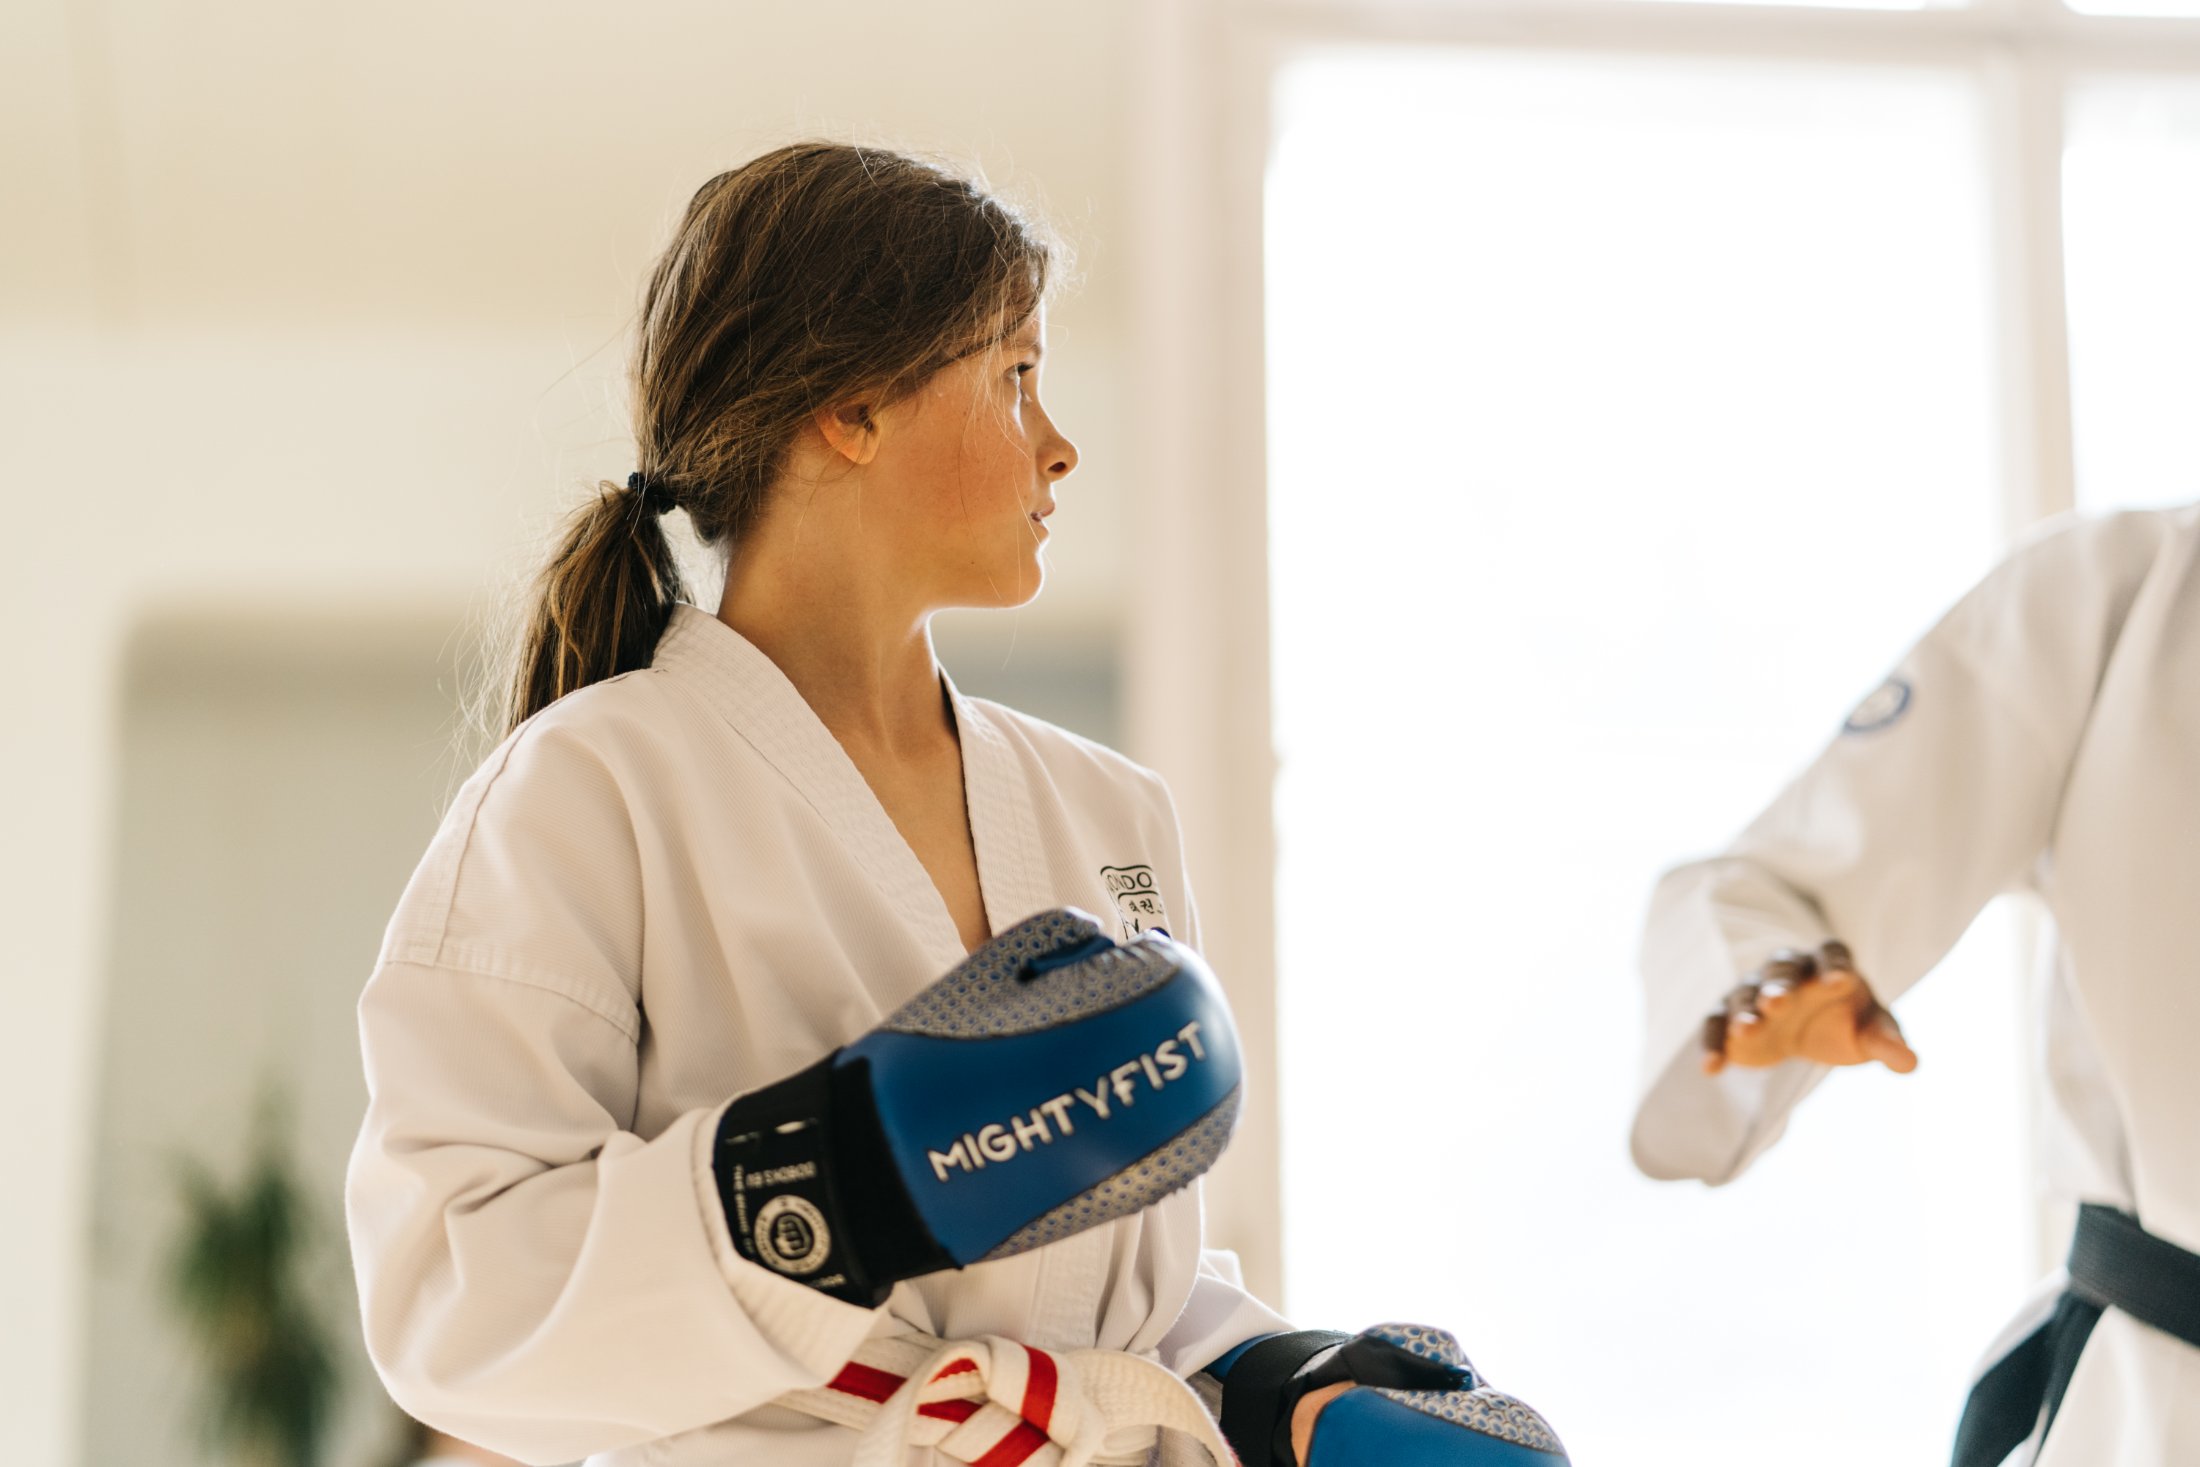 Frauen im Taekwondo: Empowerment durch Selbstverteidigung und Fitness